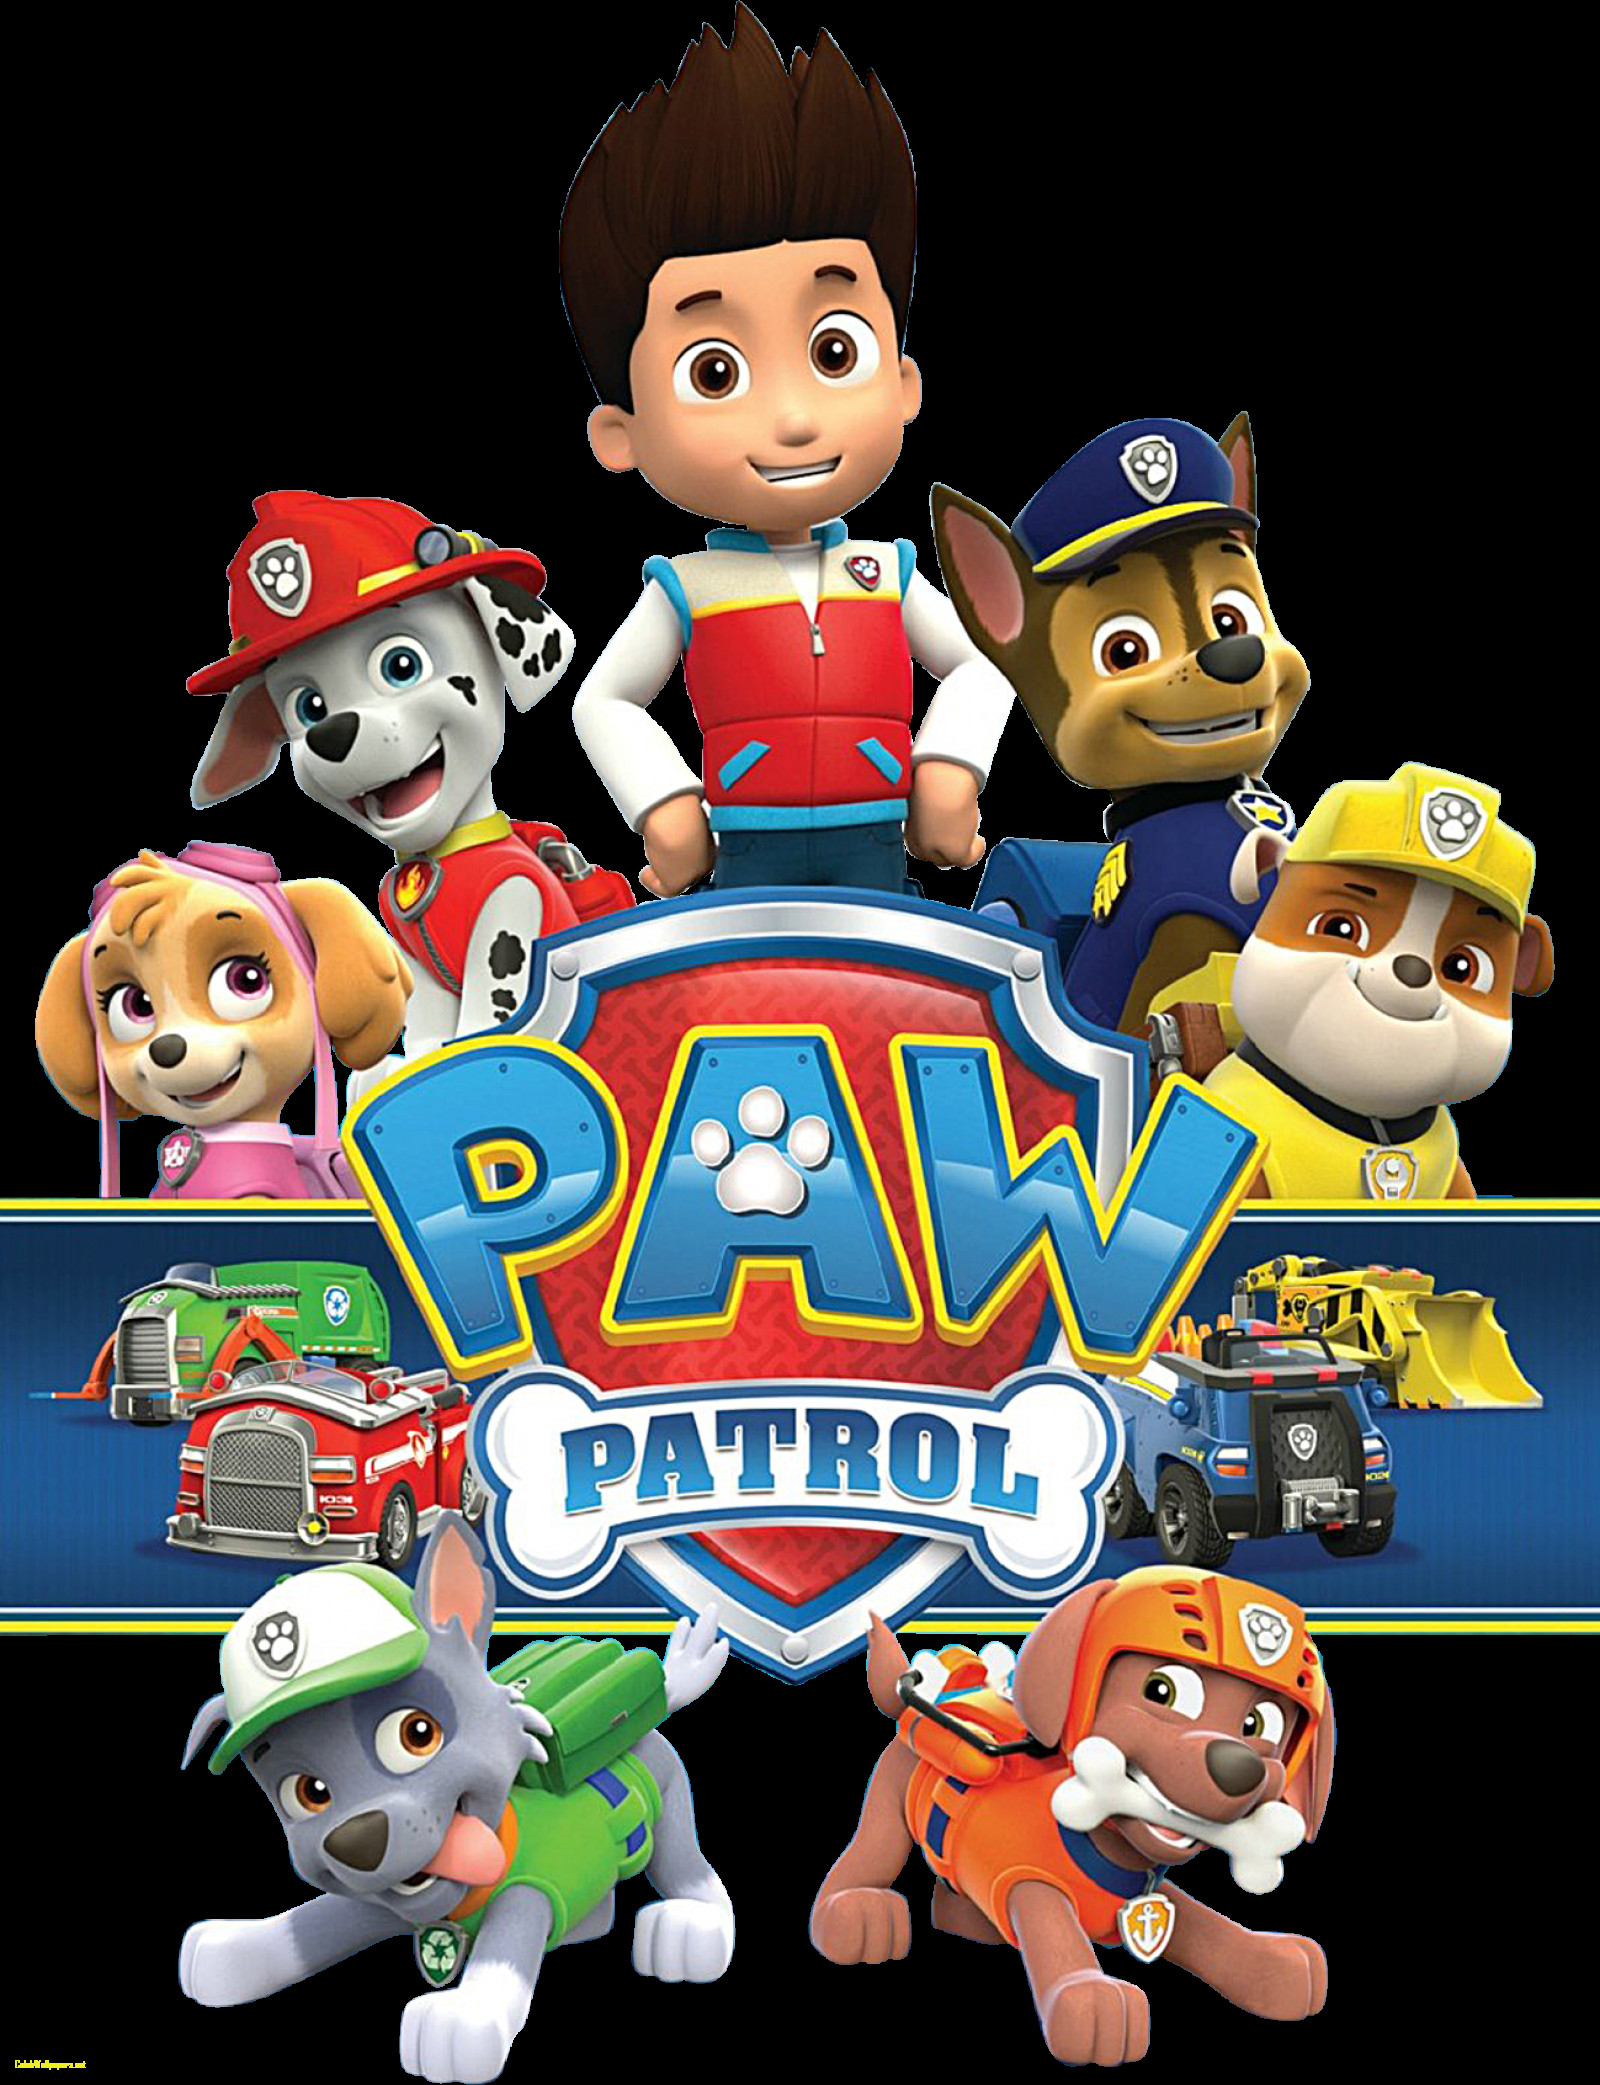 pata patrulla fondos de pantalla hd,dibujos animados,dibujos animados,juguete,animación,figura de acción